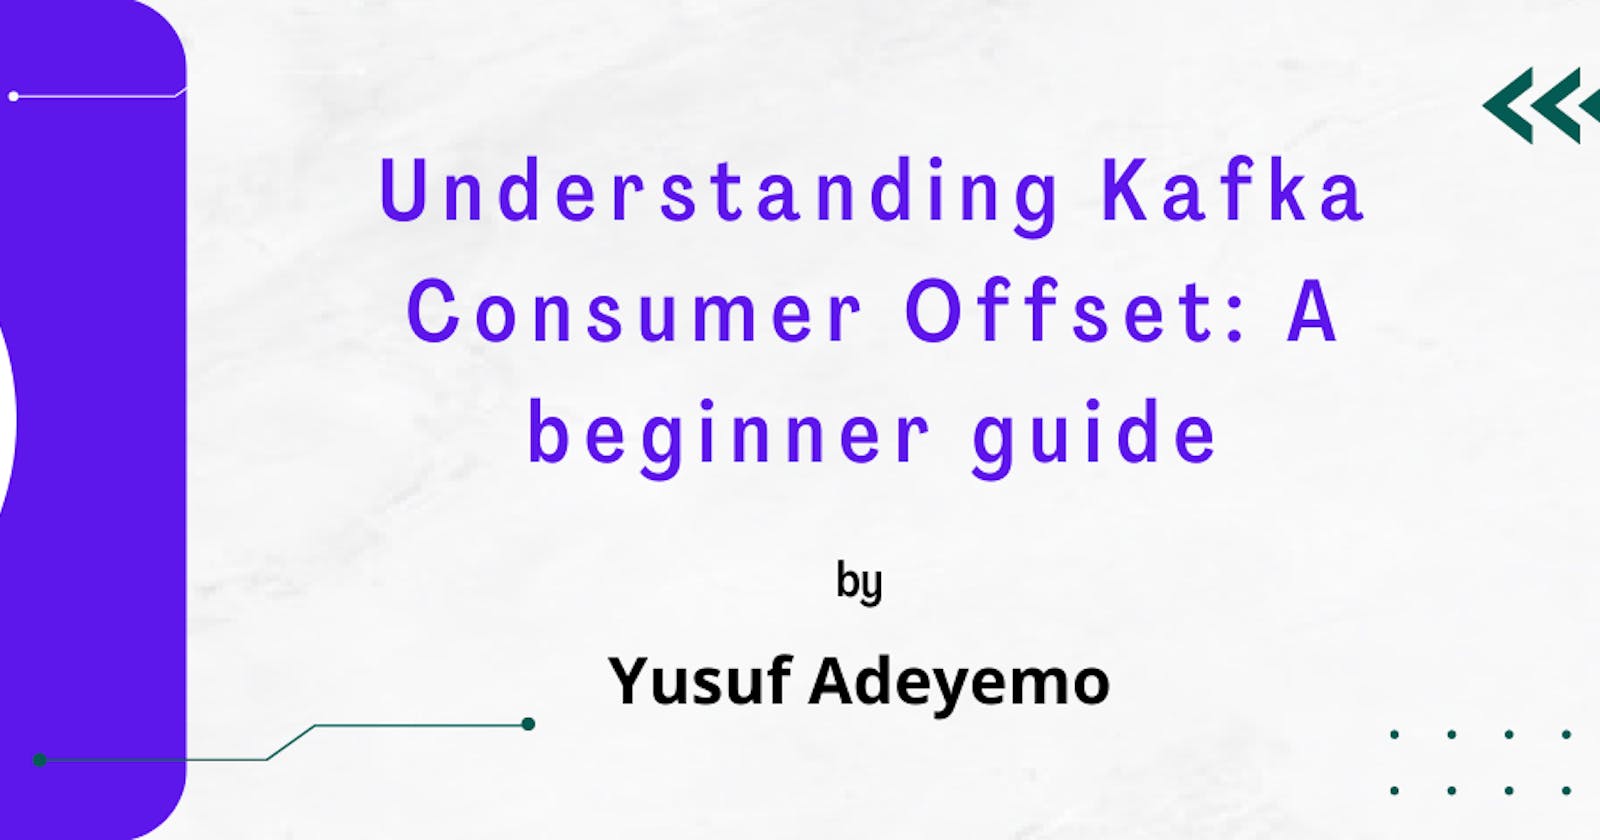 Understanding Kafka Consumer Offset: A beginner guide